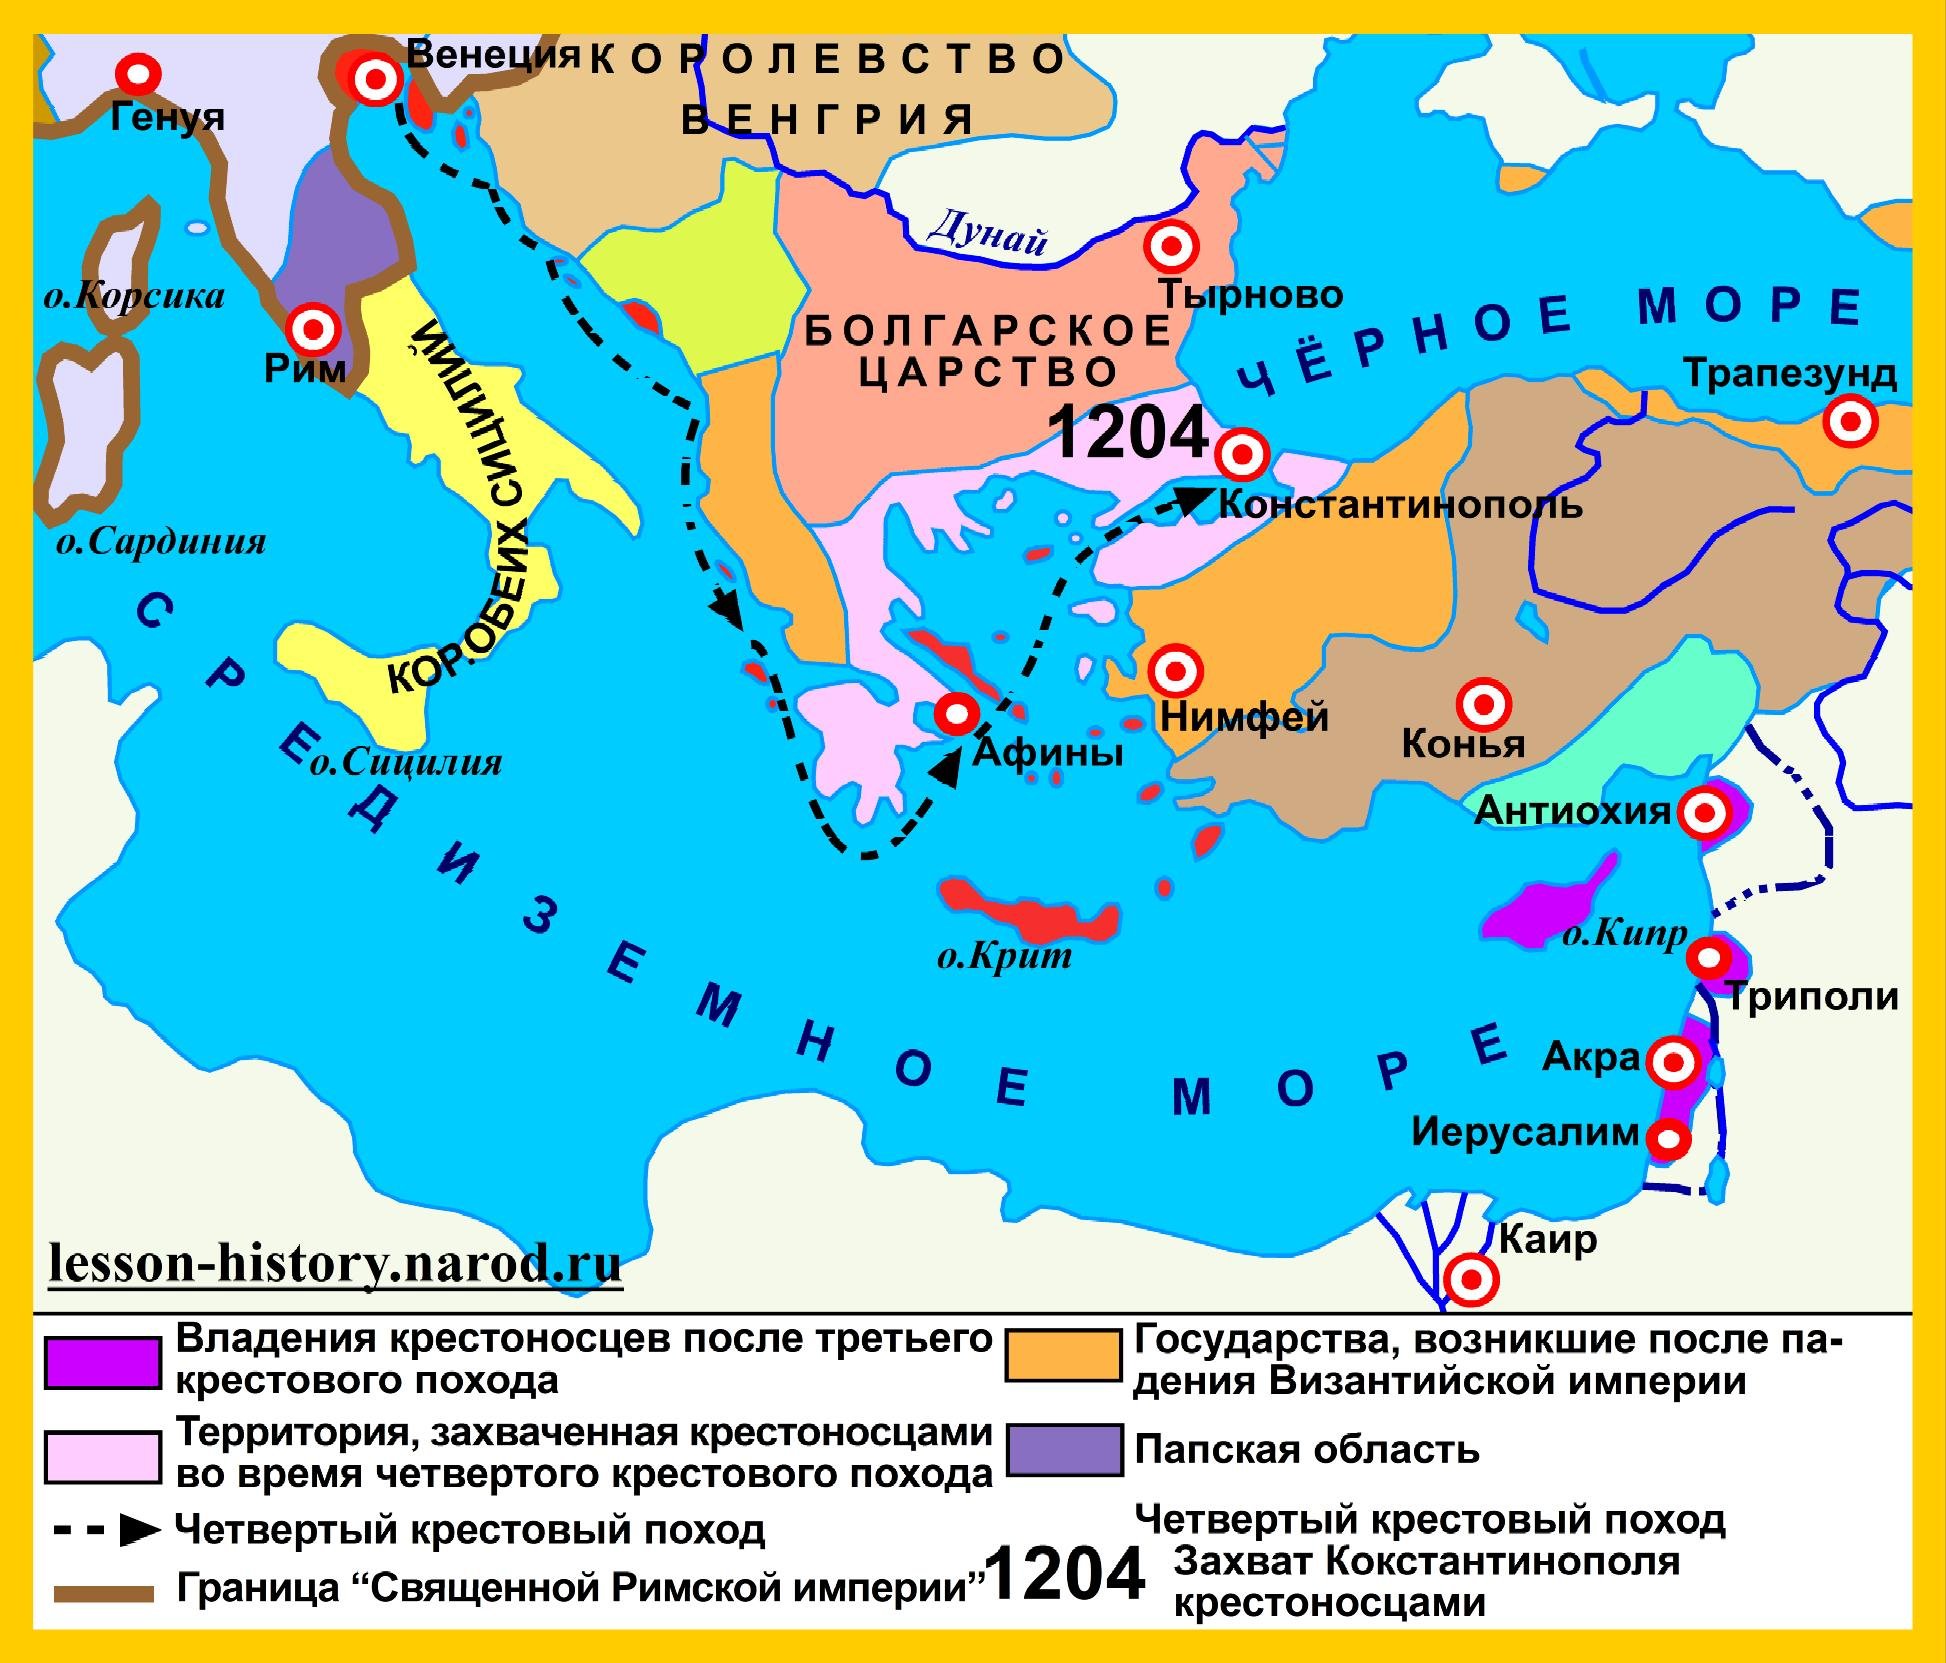 Столица византийской империи город константинополь на карте. 4 Крестовый поход взятие Константинополя карта. Четвёртый крестовый поход карта. Византийская Империя в 1204 году. Крестовые походы карта 4 поход.